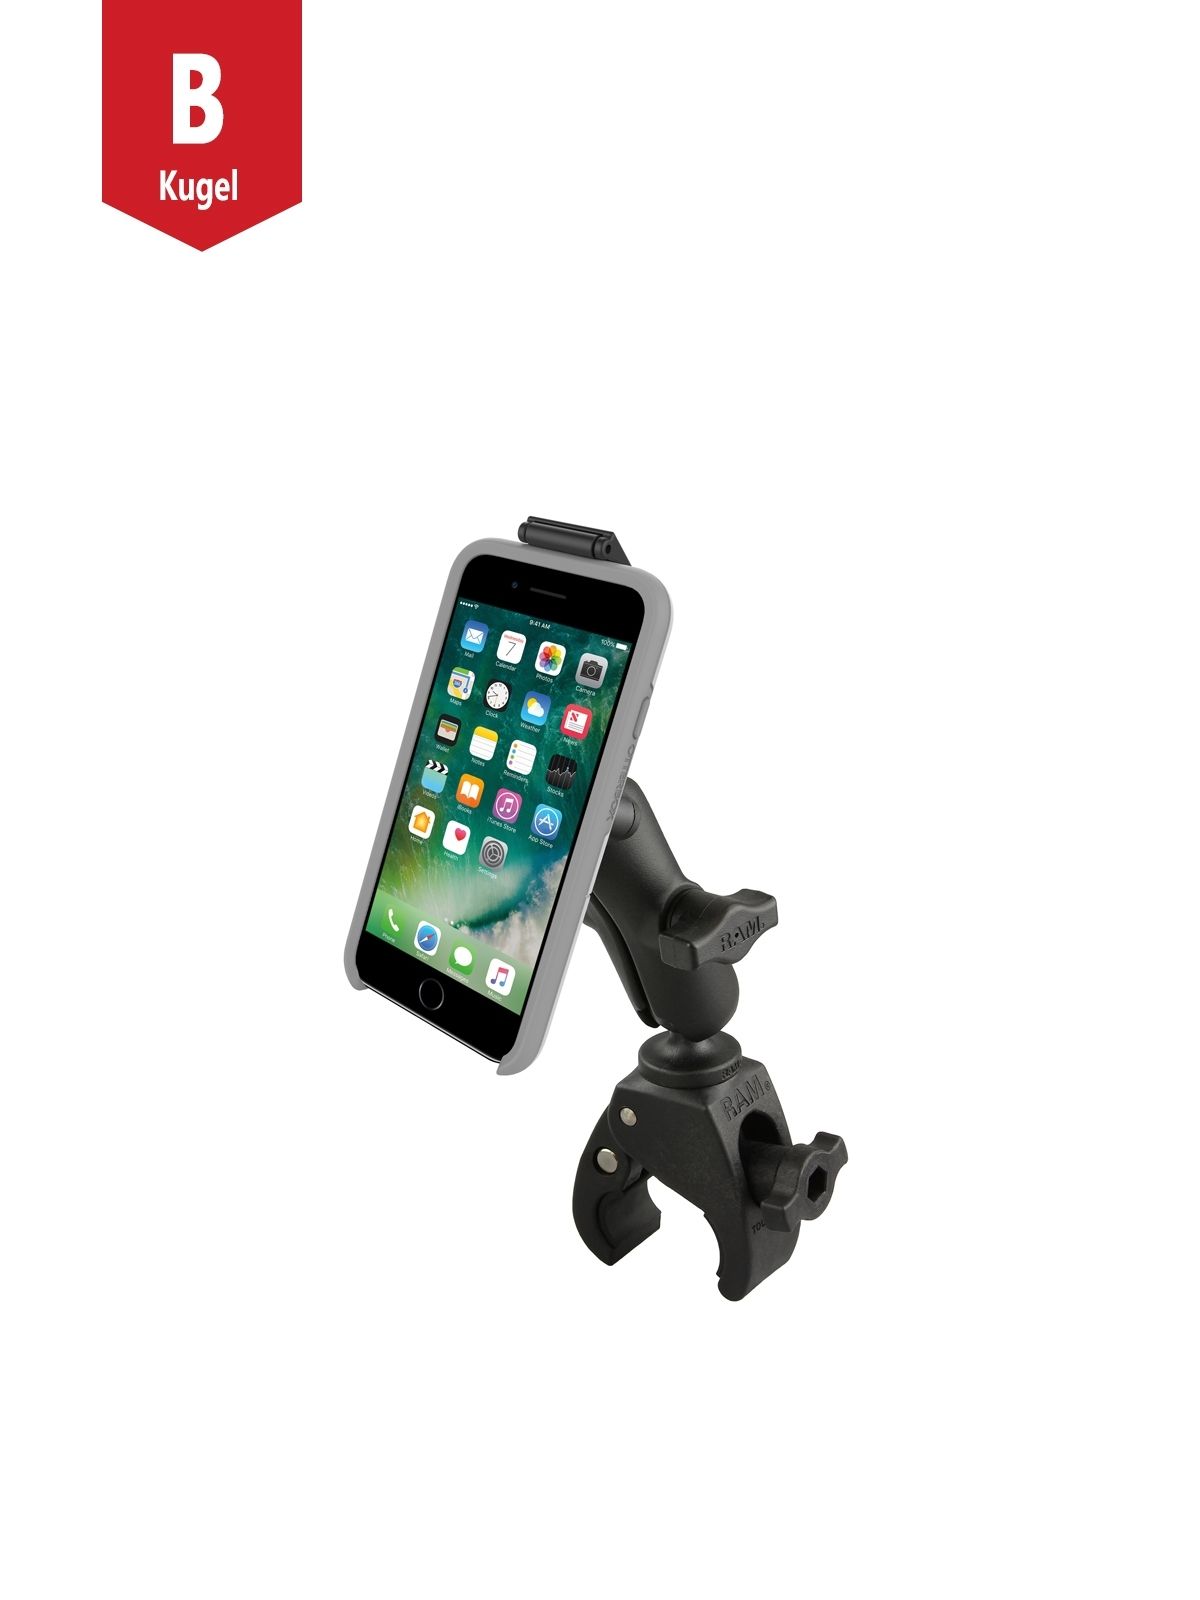 RAM Mounts Tough-Claw Halterung Smartphones in OtterBox uniVERSE Gehäusen - B-Kugel (1 Zoll), Tough-Claw klein (Durchmesser 15,9-29,0 mm)